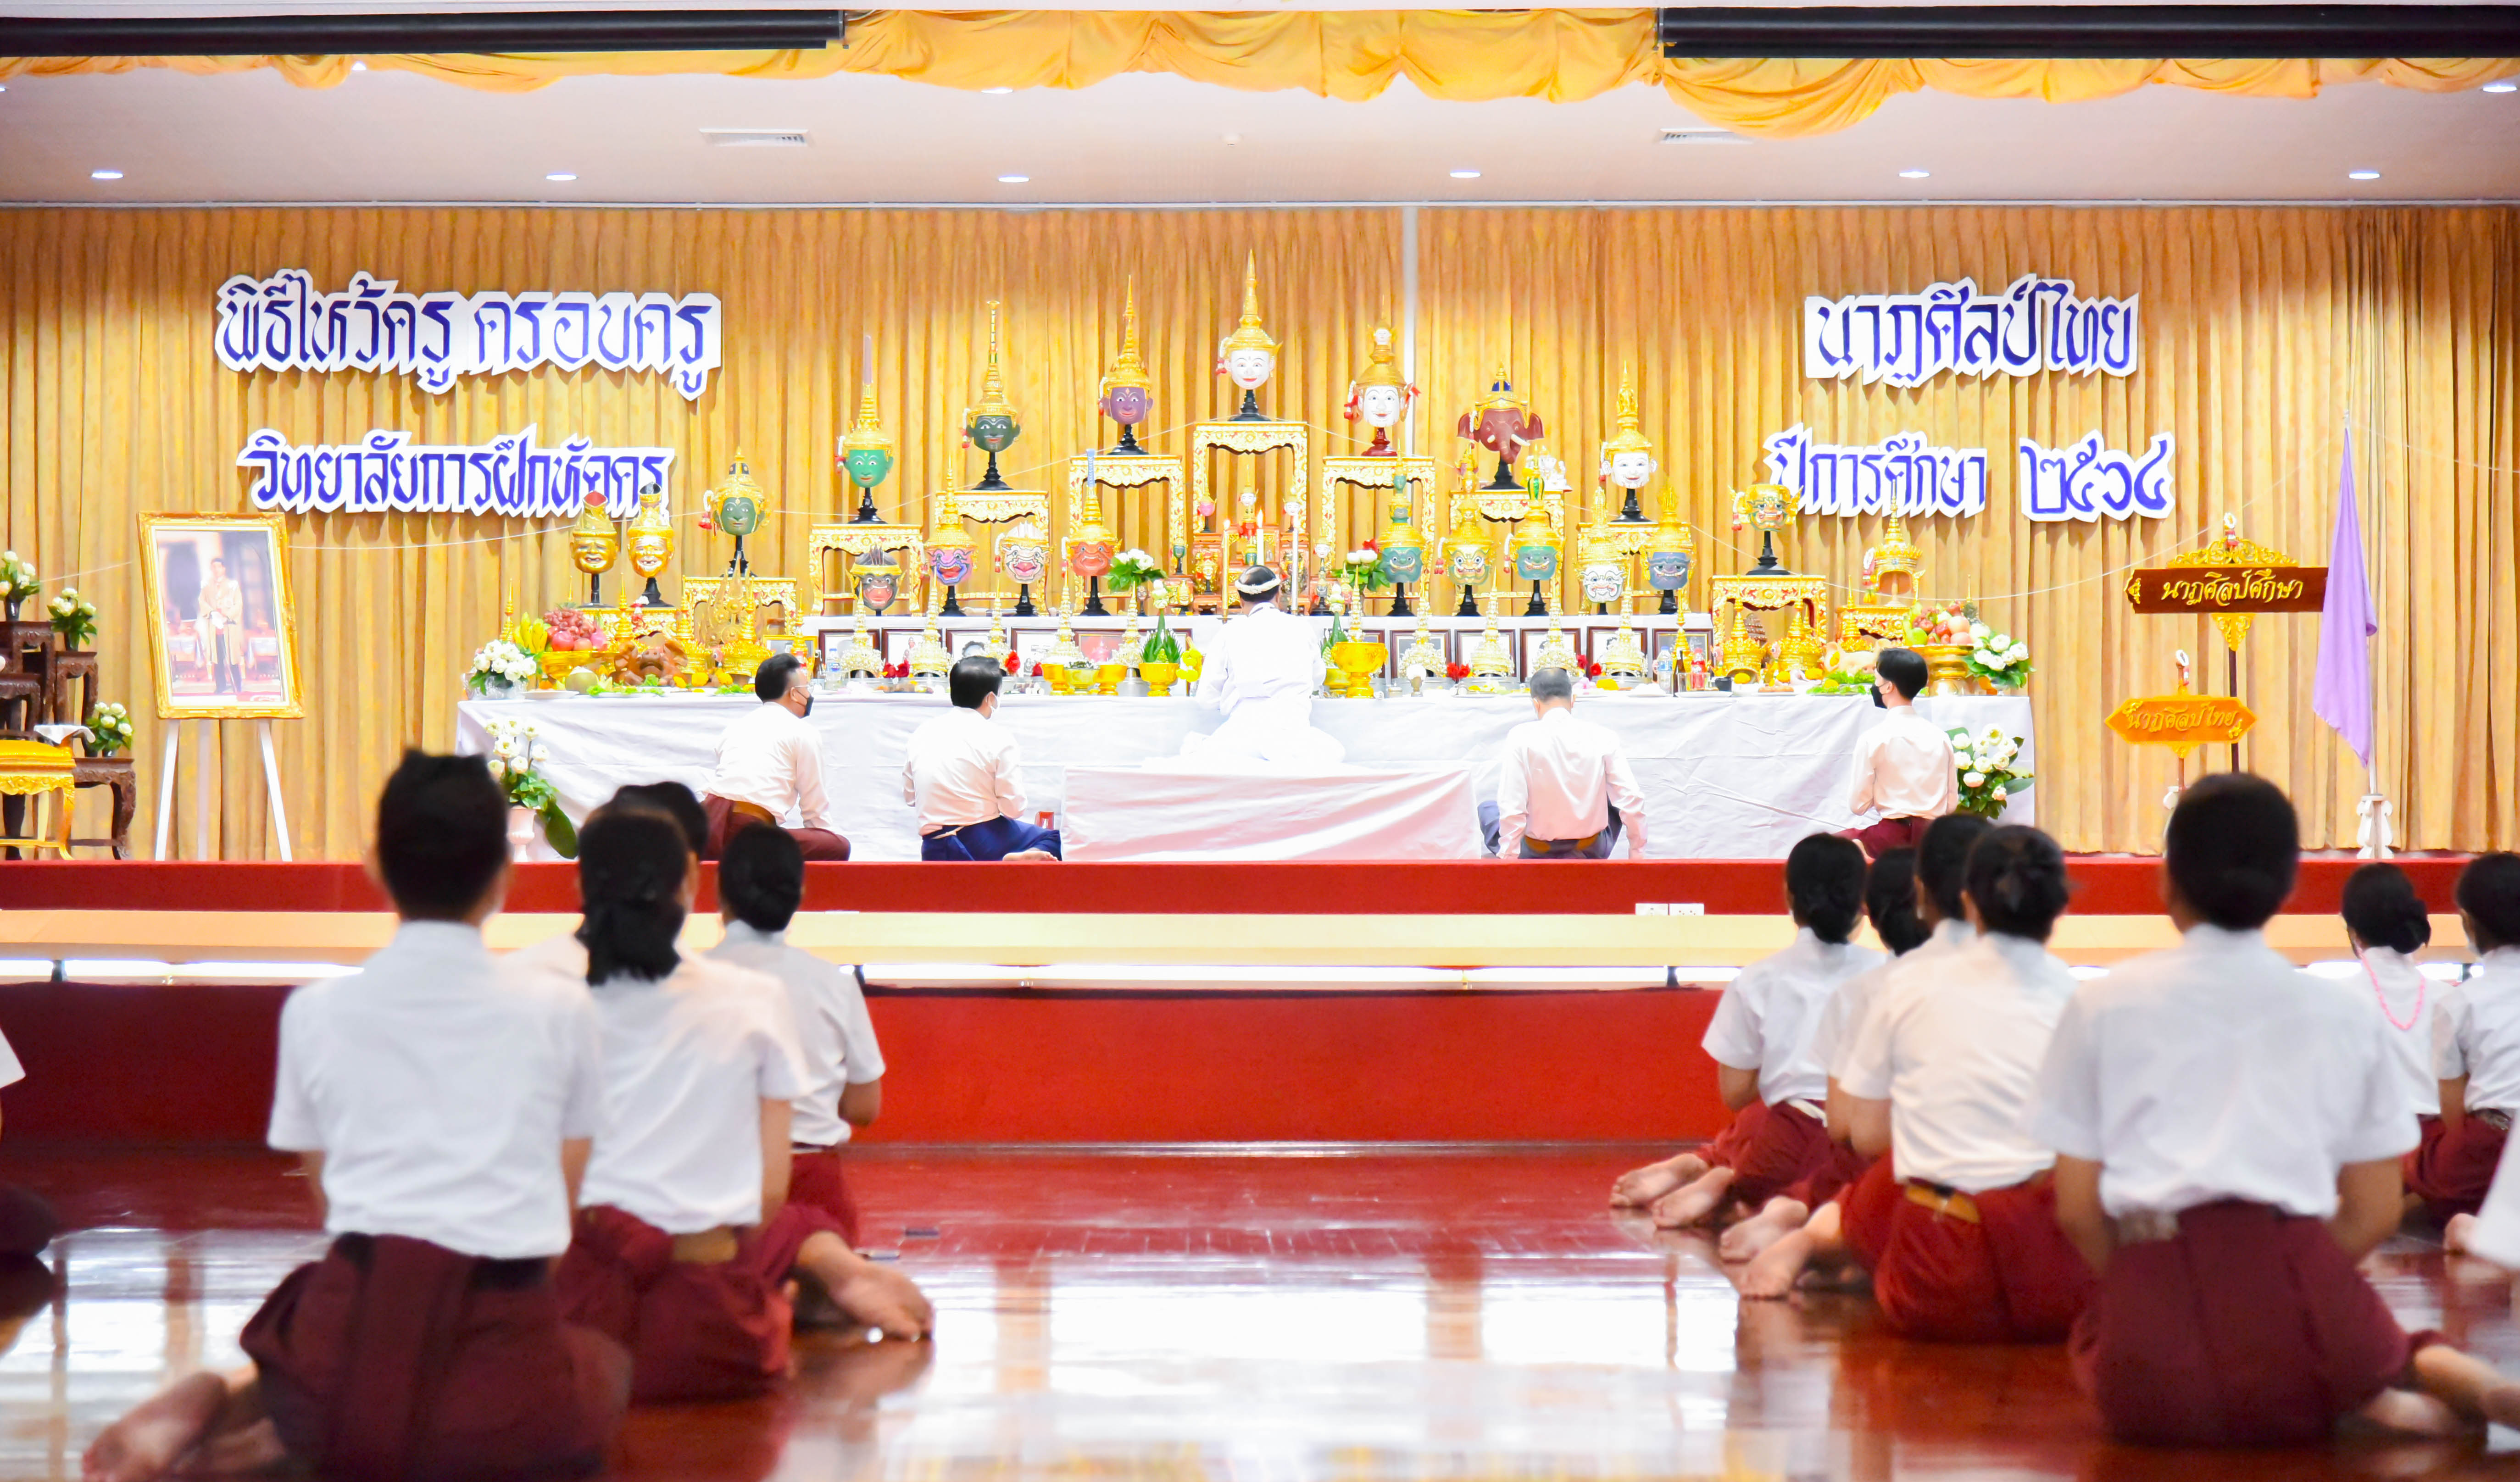 วันที่ 17 มีนาคม 2565 สาขาวิชานาฏศิลป์ศึกษา วิทยาลัยการฝึกหัดครู จัดพิธีไหว้ครู ครอบครูนาฏศิลป์ไทย ประจำปี 2556 ณ หอประชุมพิฆเนศวร มหาวิทยาลัยราชภัฏพระนคร ได้รับเกียรติจาก ผู้ช่วยศาสตราจารย์ ดร.ศศิธร 